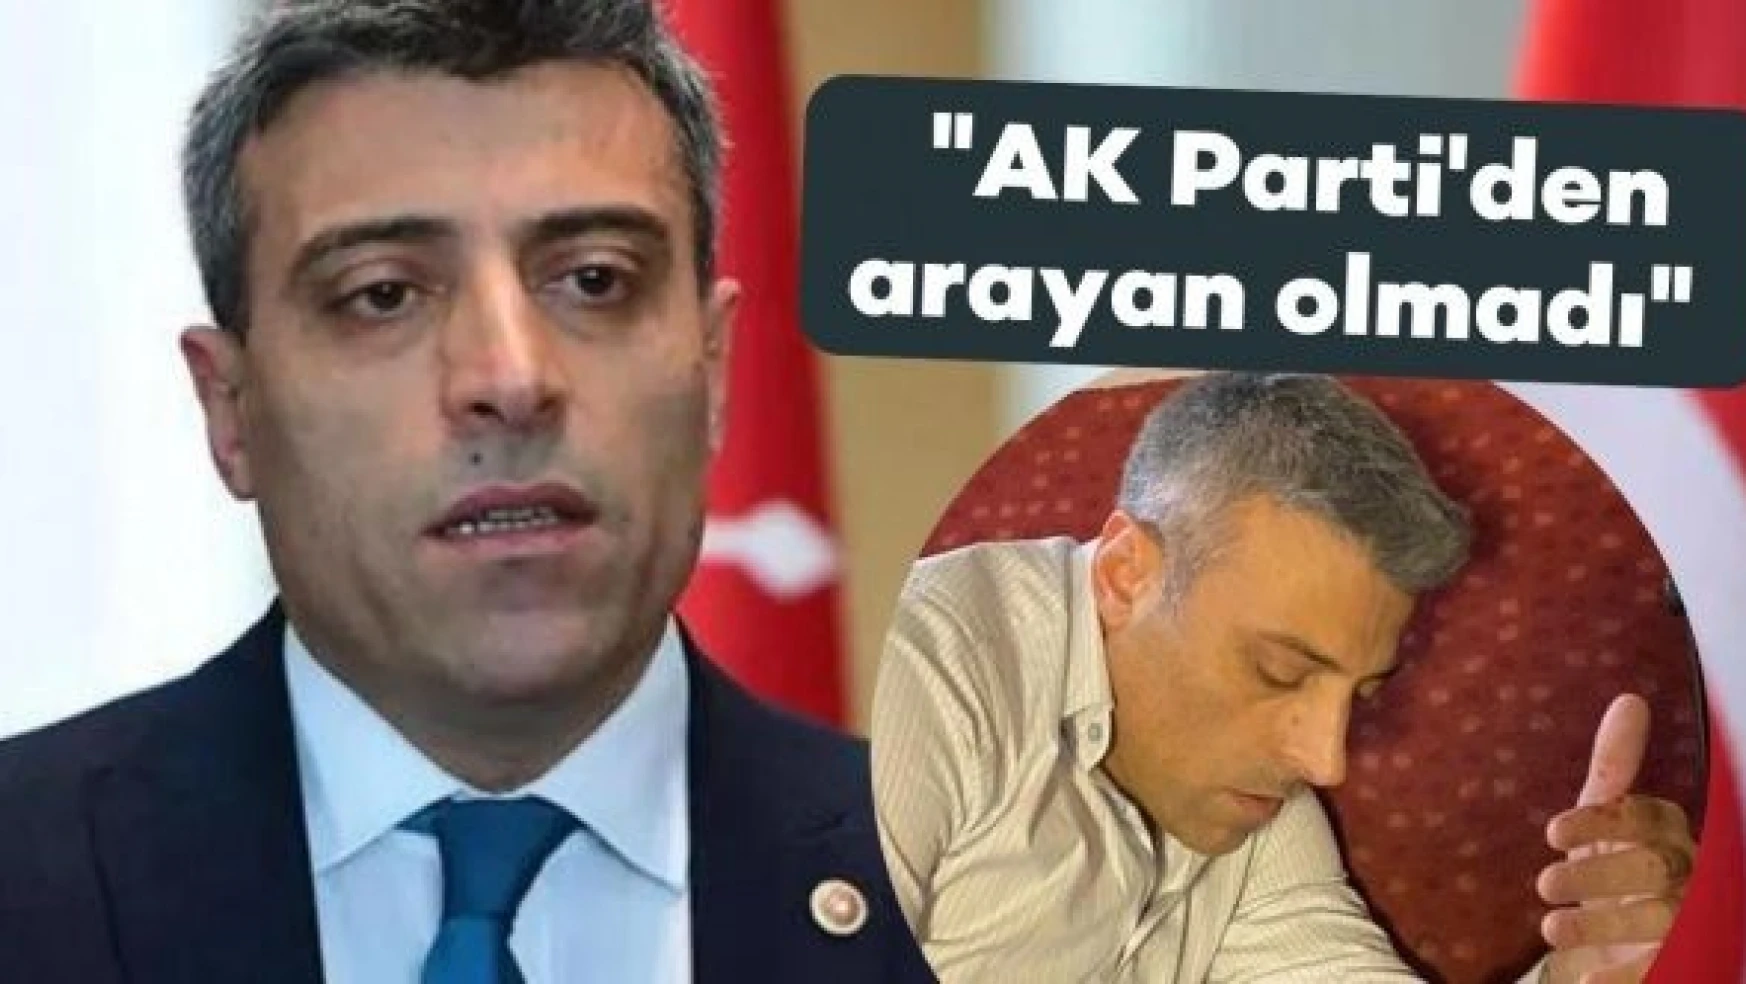 Öztürk Yılmaz: 'AK Parti'den arayan olmadı'